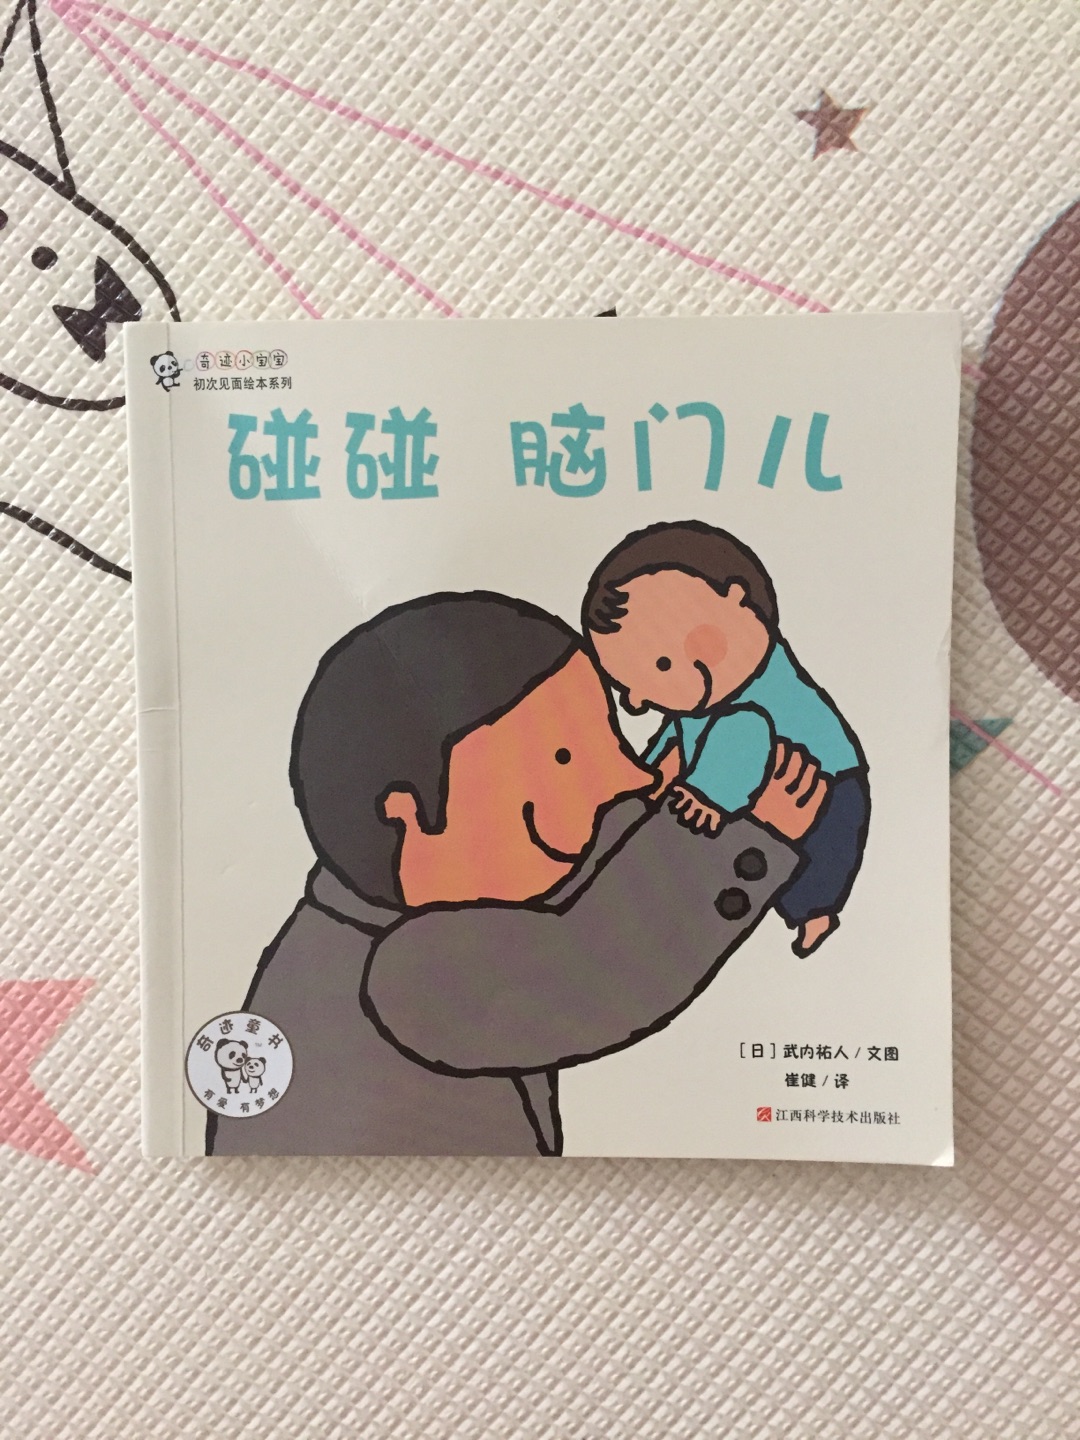 很可爱的一套书，宝宝喜欢，妈妈也喜欢看，内容简单，适合低幼宝宝